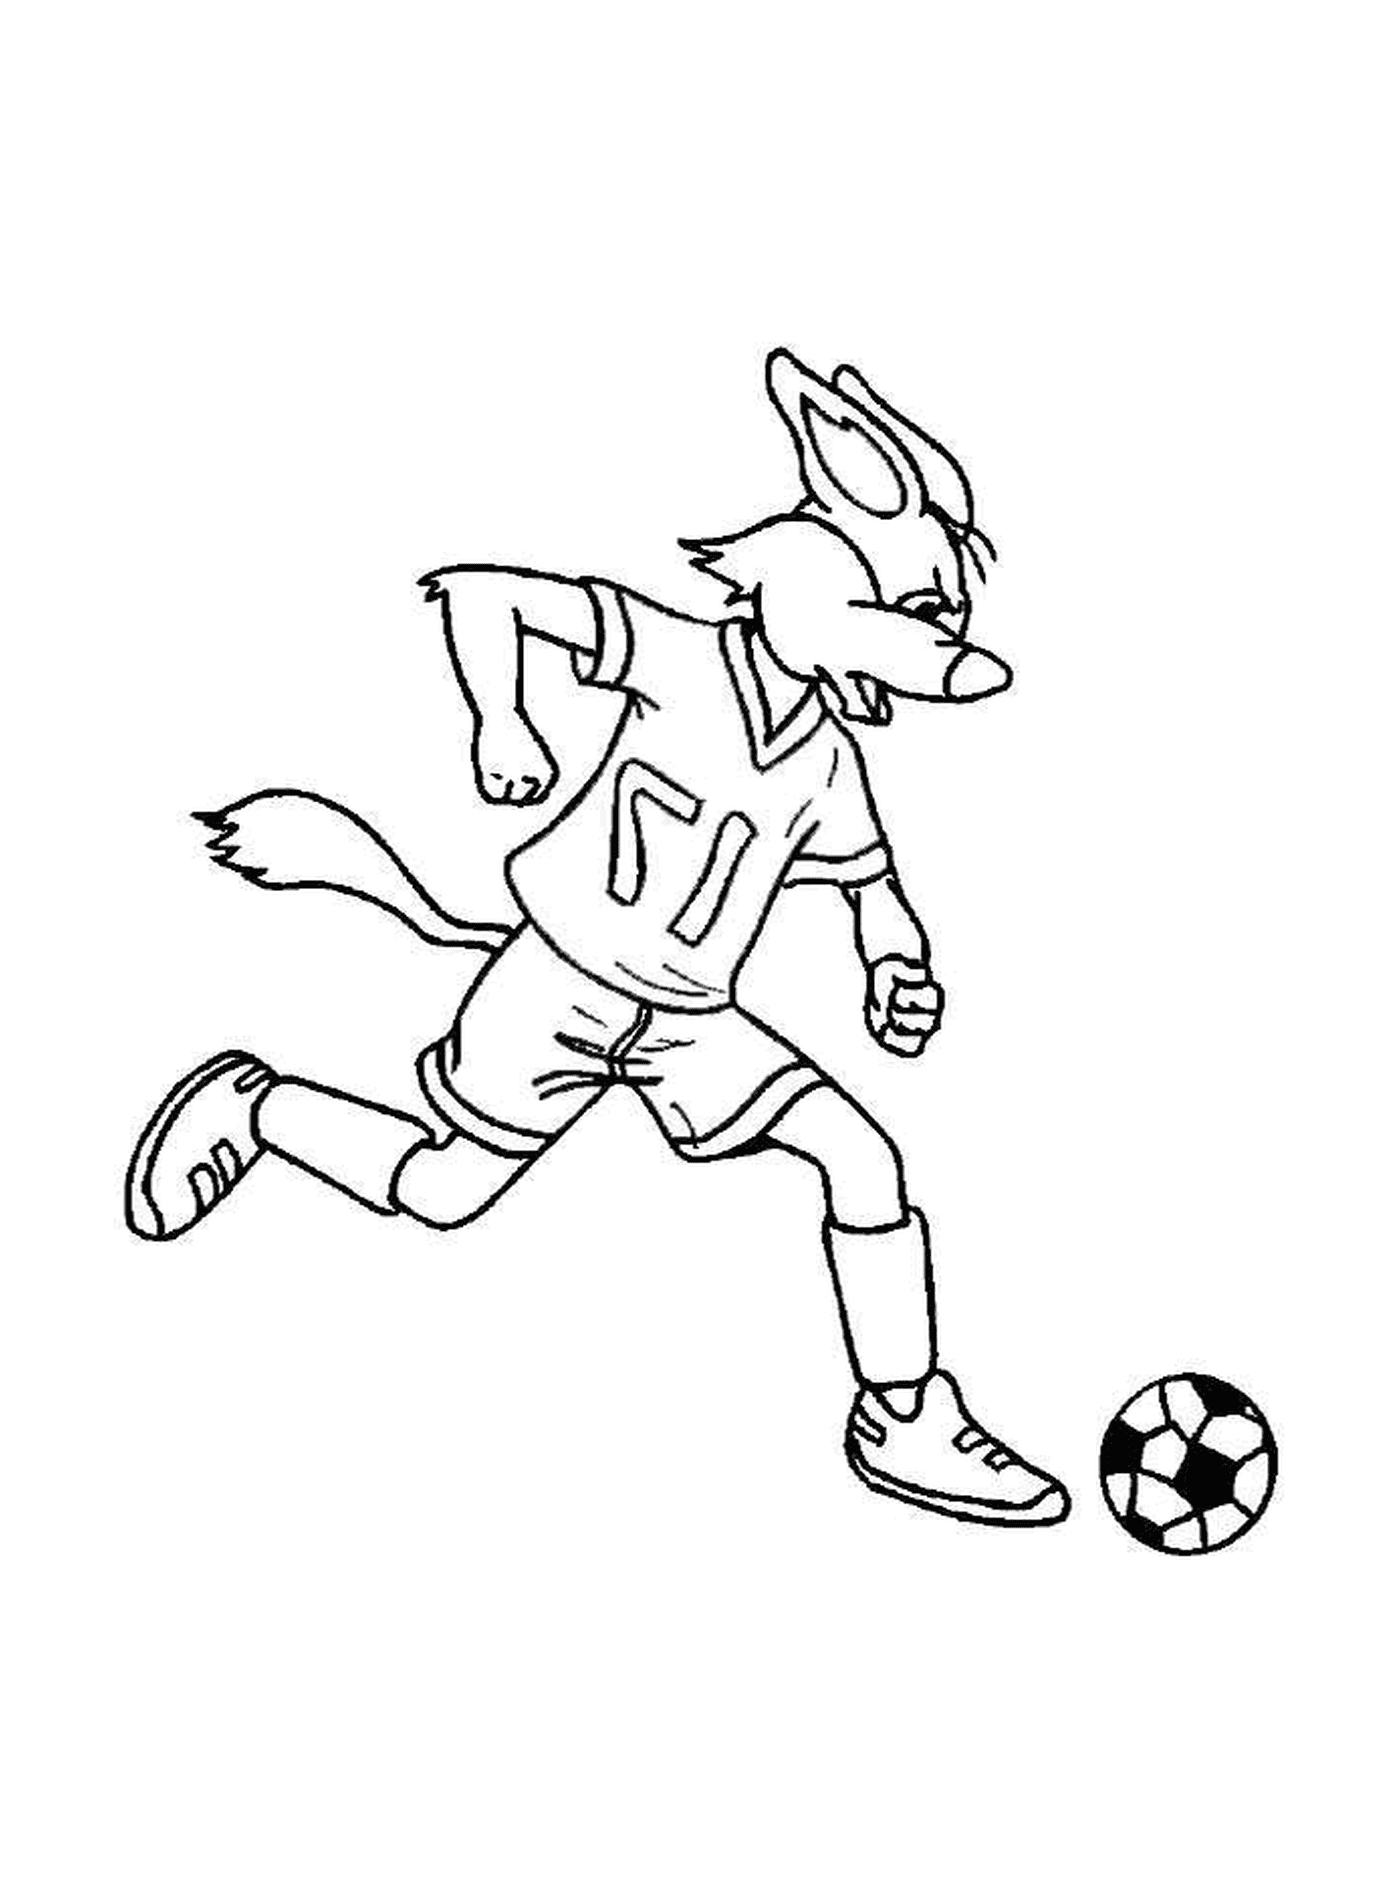  Кролик играет в футбол 